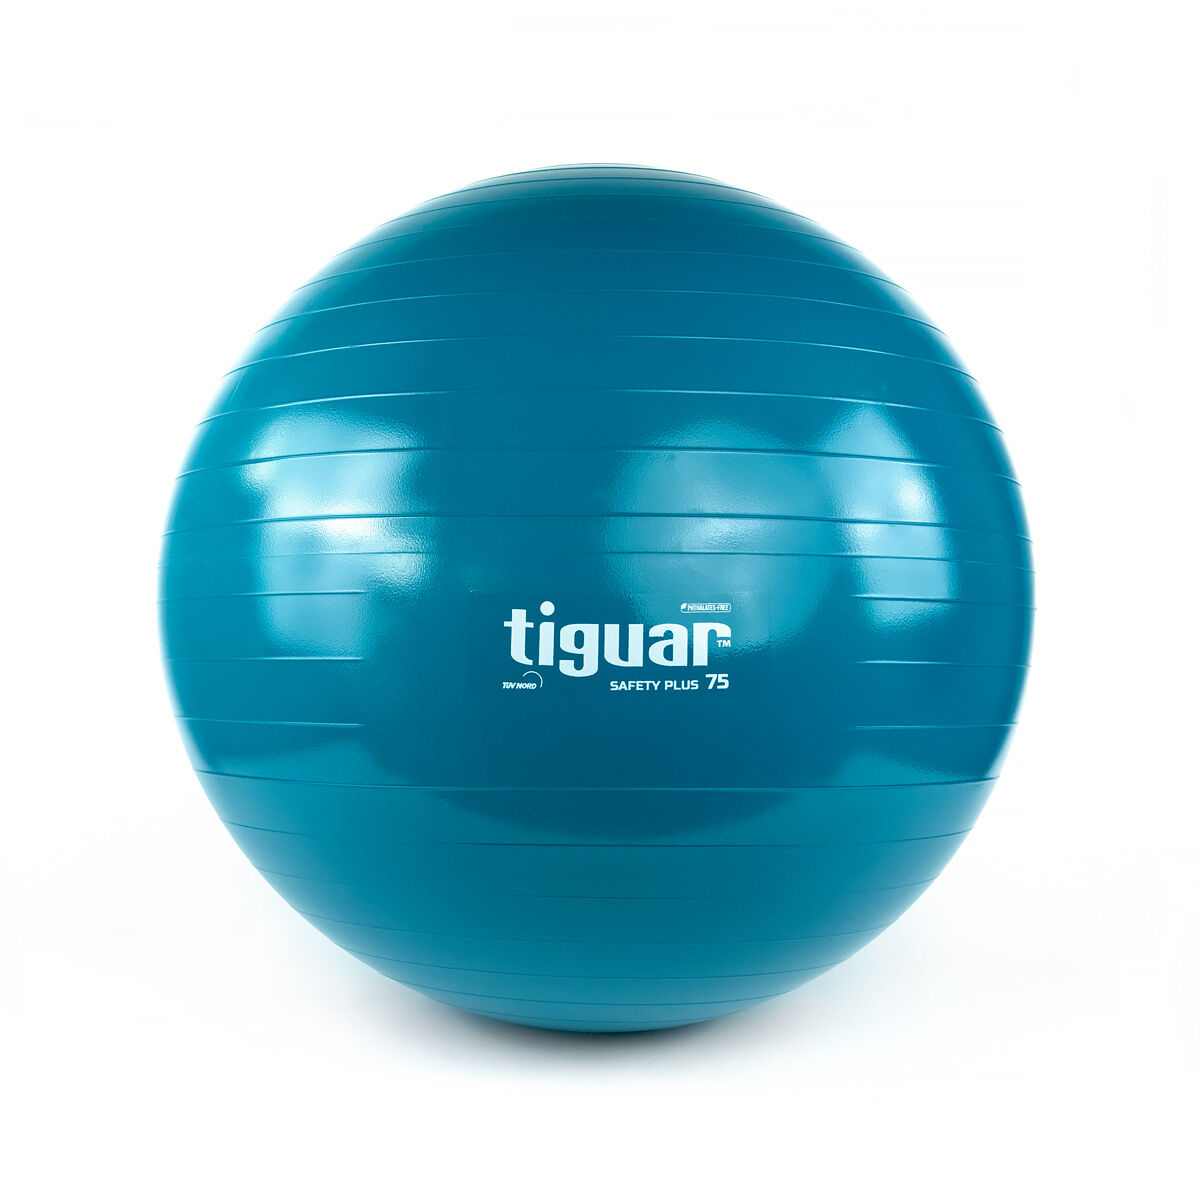 Tiguar Safety plus мяч морской гимнастический диаметром 75 см, 1 шт.